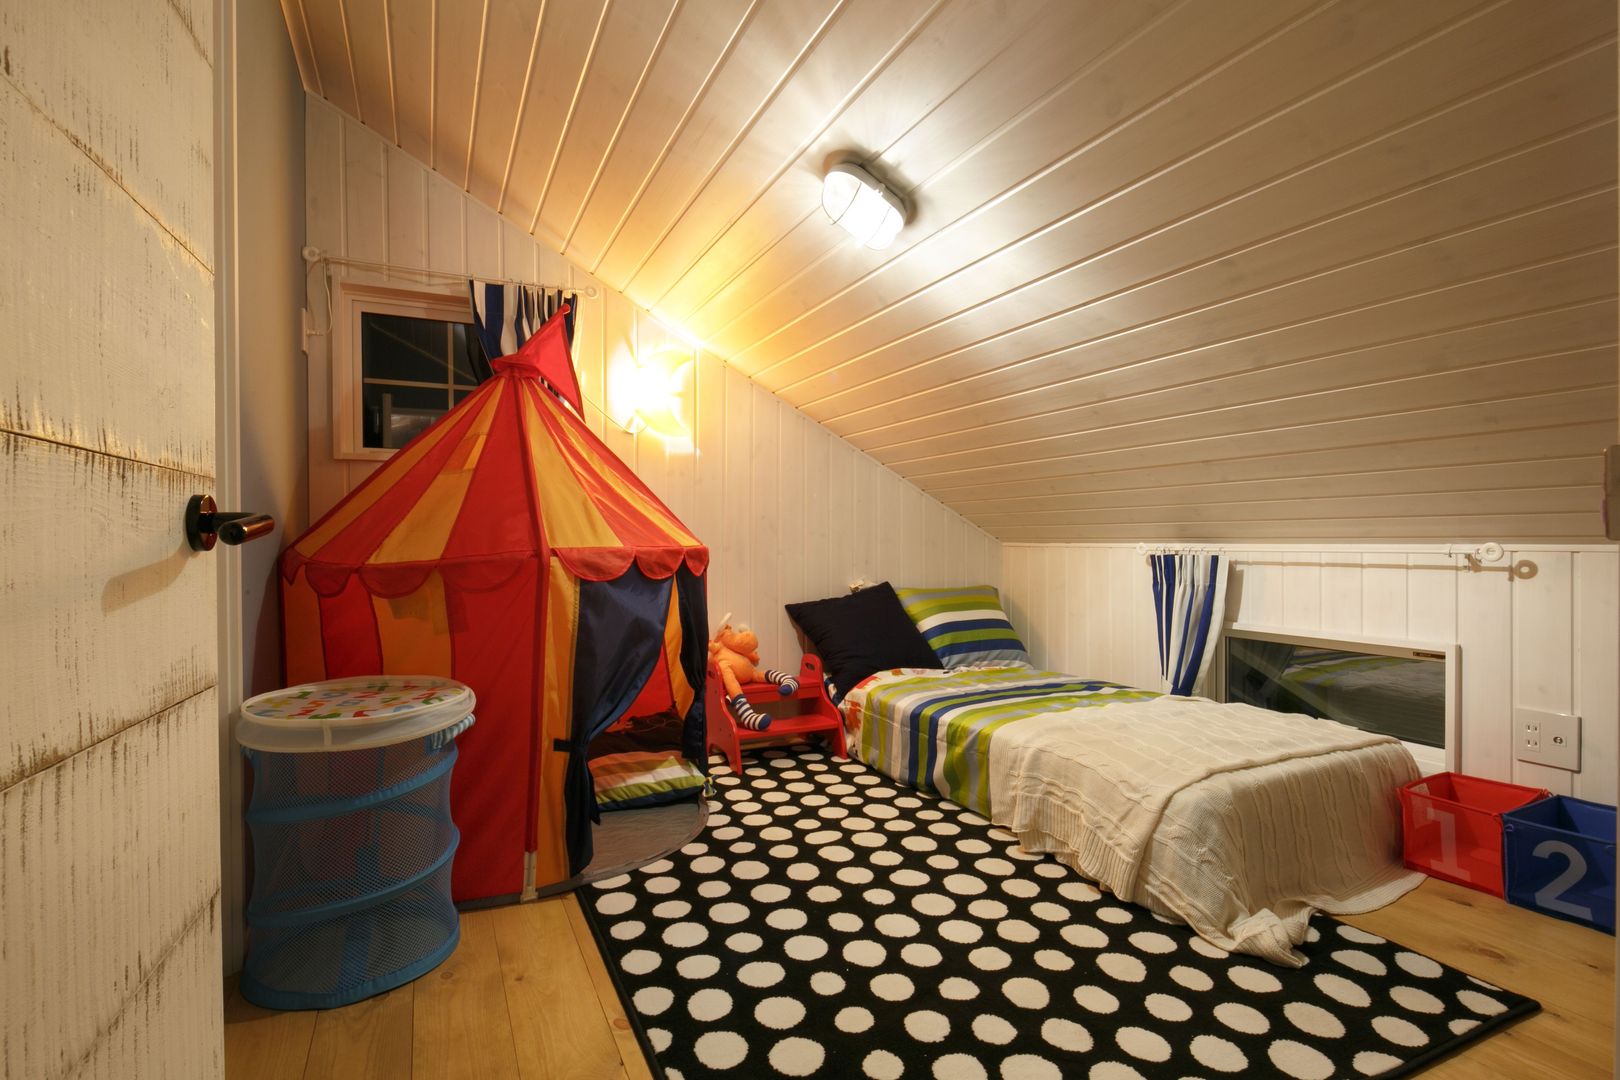 H's HOUSE, dwarf dwarf Classic style nursery/kids room